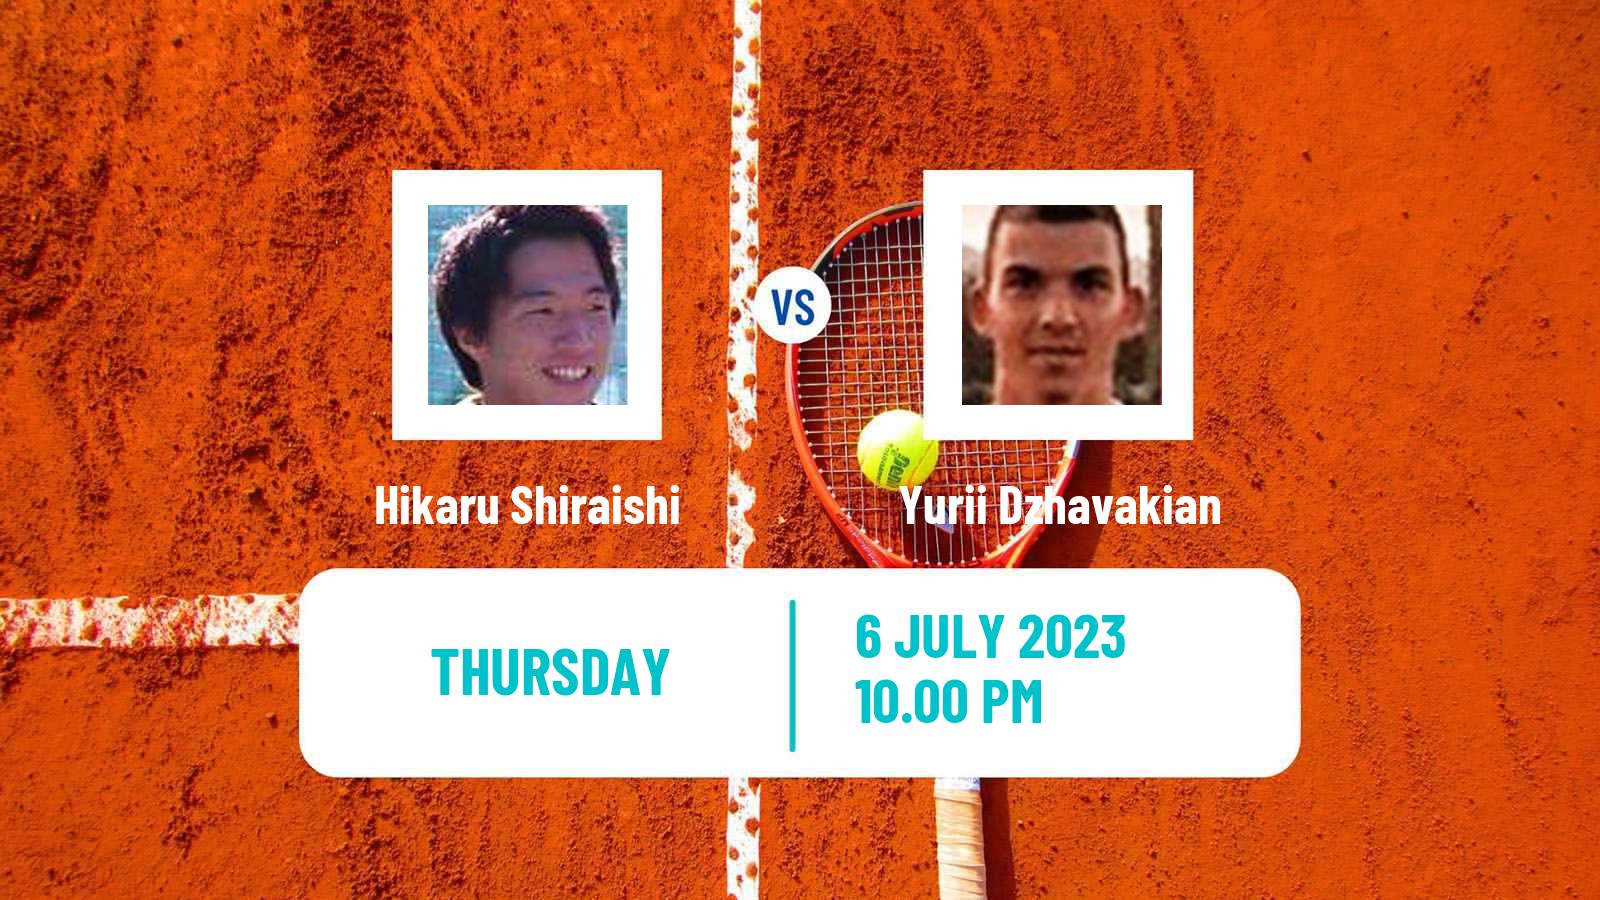 Tennis ITF M15 Nakhon Si Thammarat 3 Men Hikaru Shiraishi - Yurii Dzhavakian